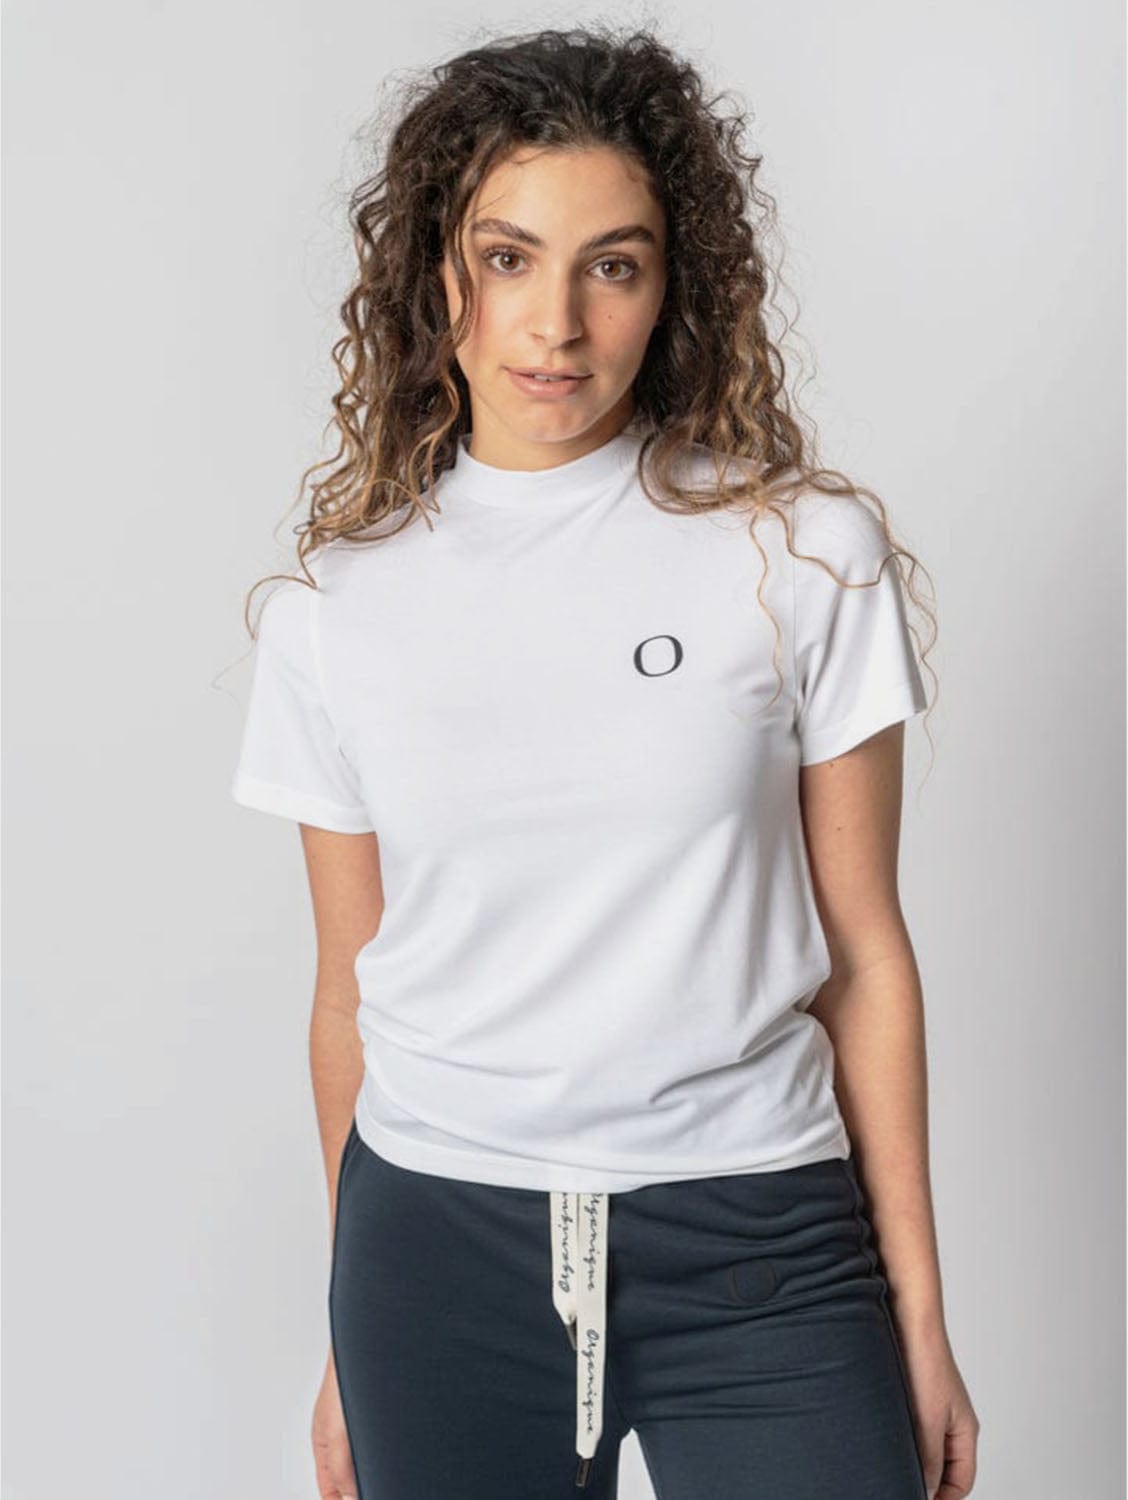 Organique Round Neck Shirt XL